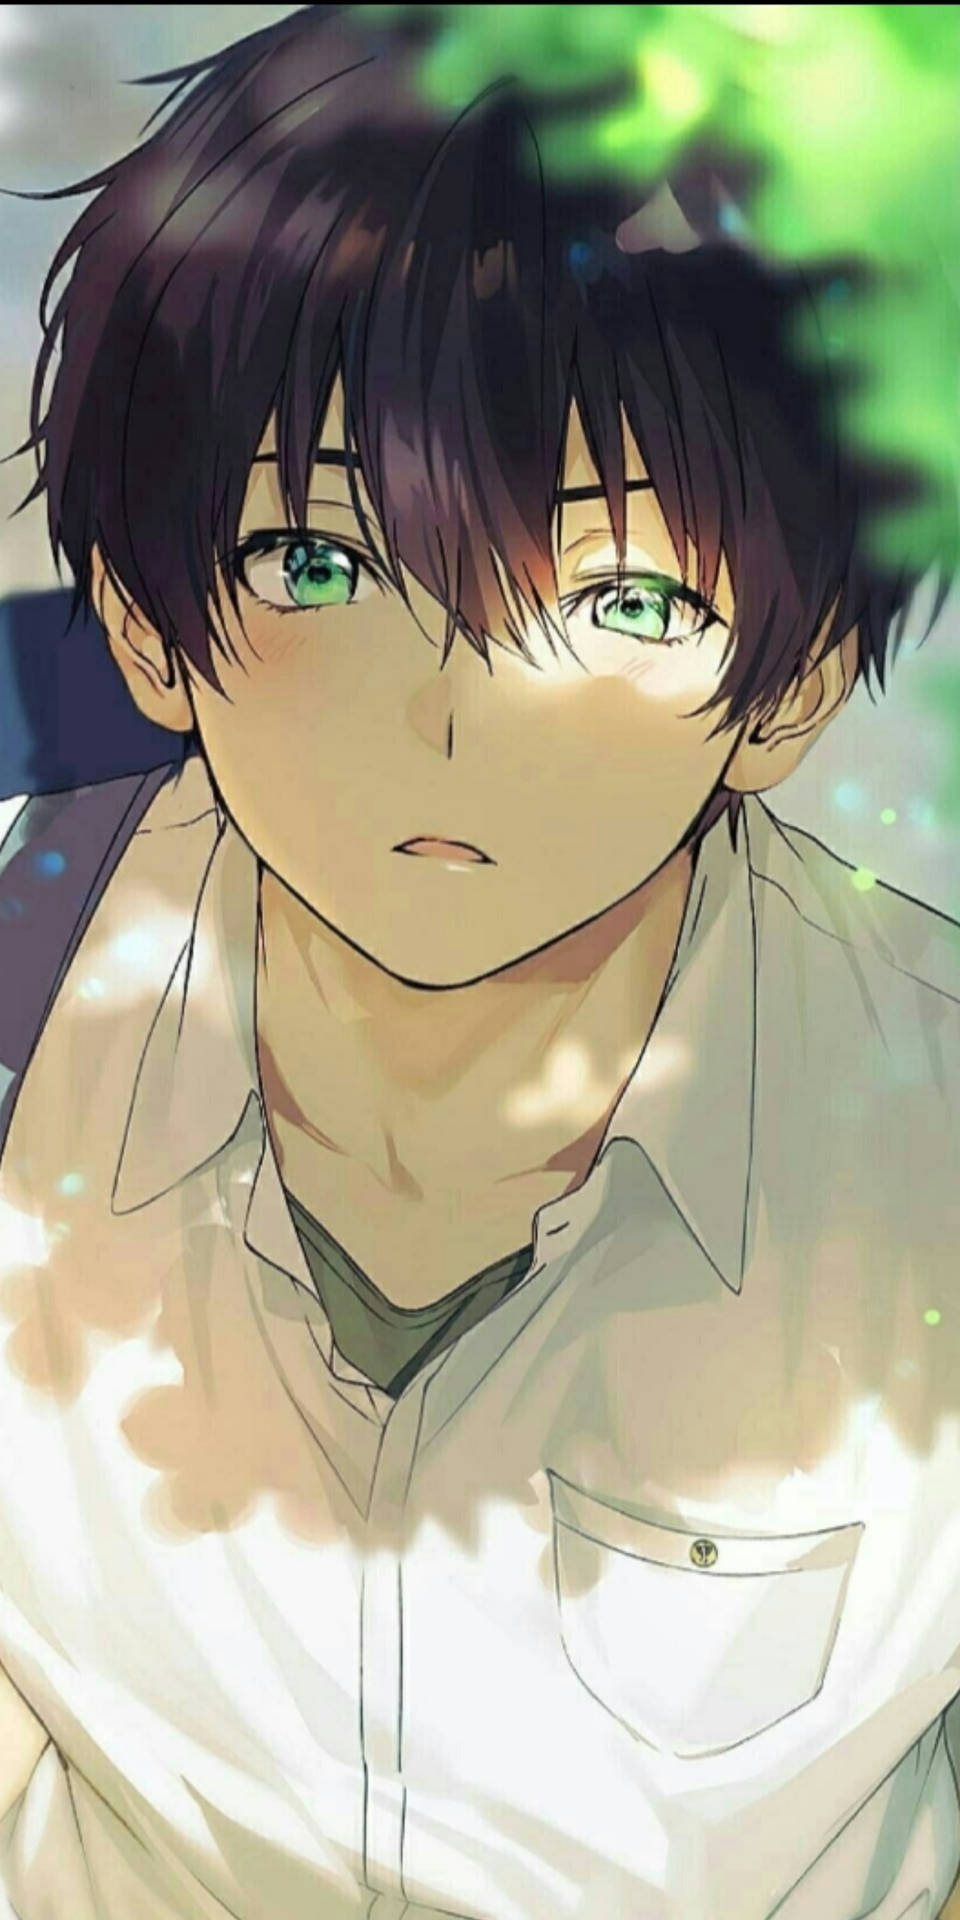 Green-eyed Aesthetic Anime Boy Background